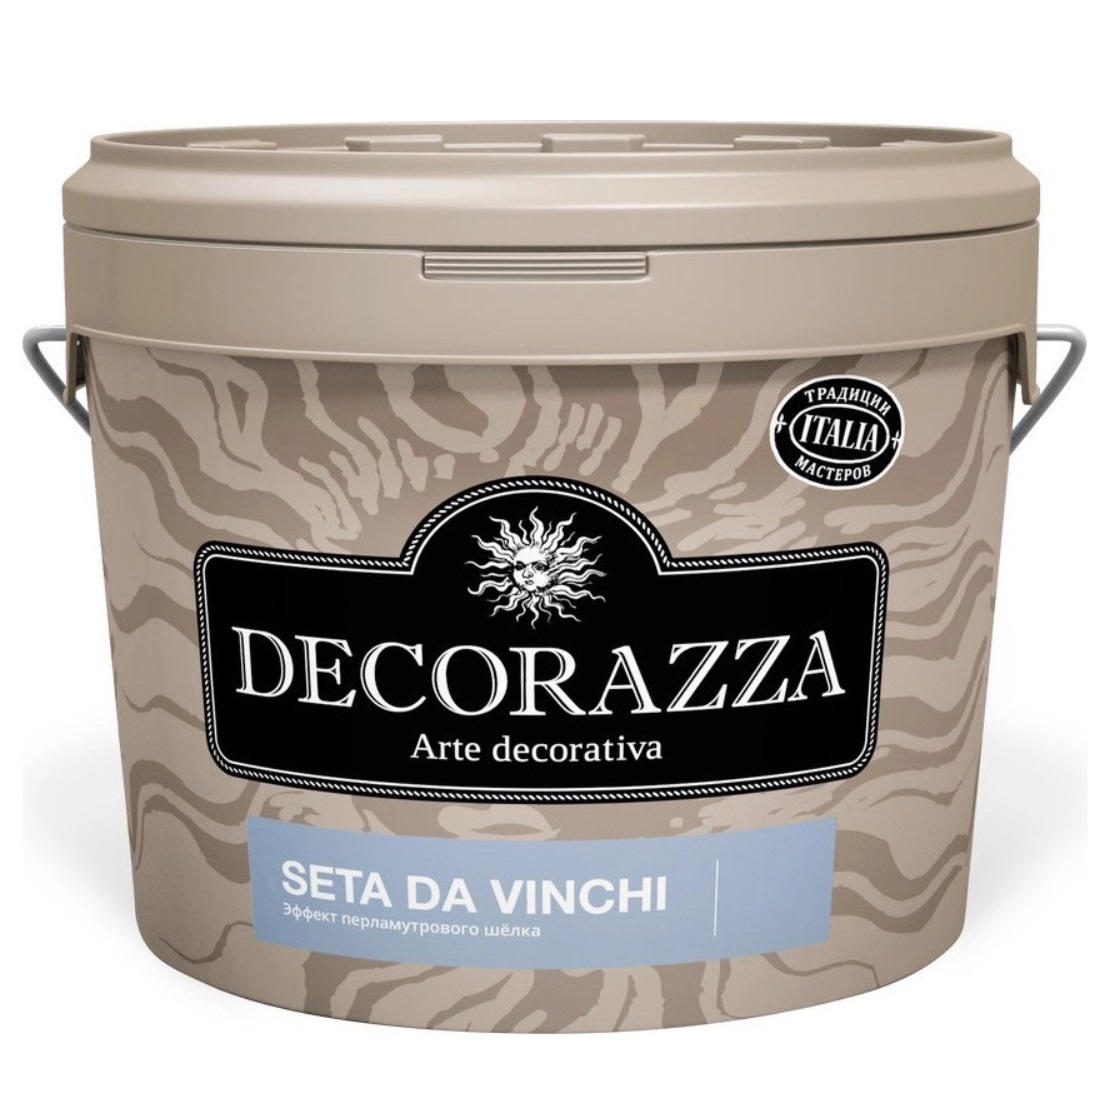 Декоративное покрытие с  более выраженным эффектом перламутрового шёлка Decorazza dz seta da vinci sd 001. 5 кг декоративная краска decorazza seta oro 1 0кг